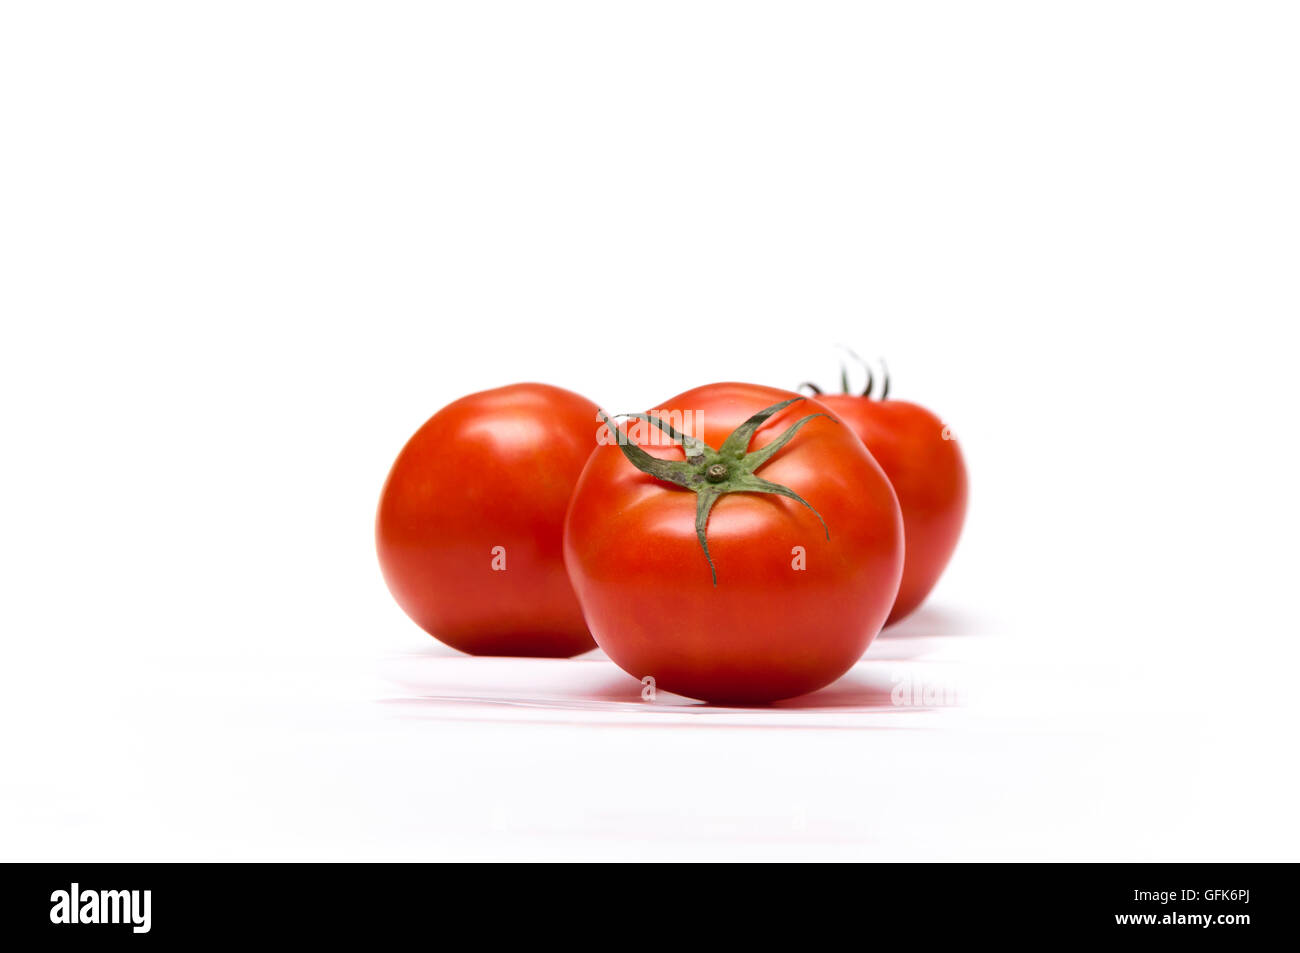 Il pomodoro è originaria dell'america del sud occidentale, è cresciuto in tutto il mondo per i suoi frutti commestibili, con tousands di cultivar. Foto Stock